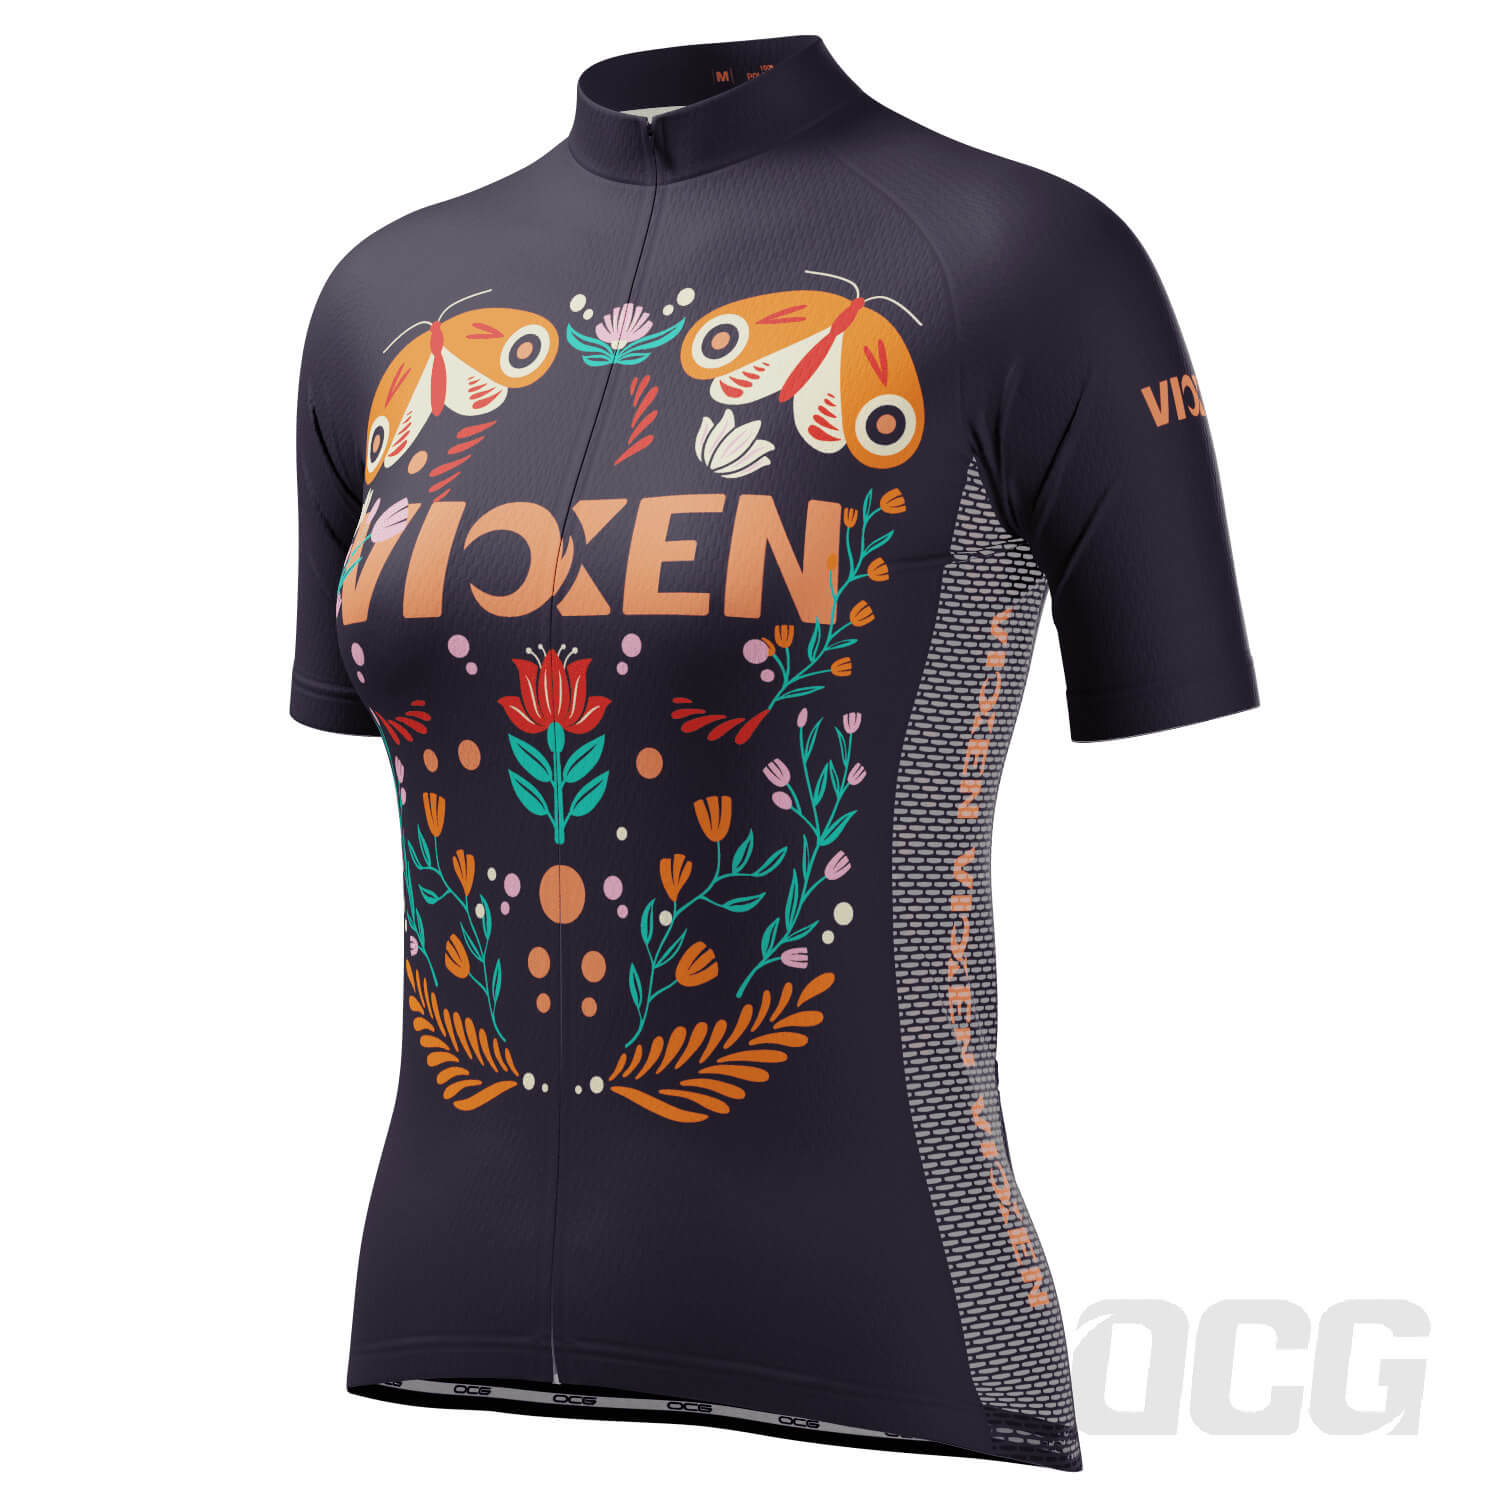 Women's Vixen Butterflies Short Sleeve Cycling Jersey